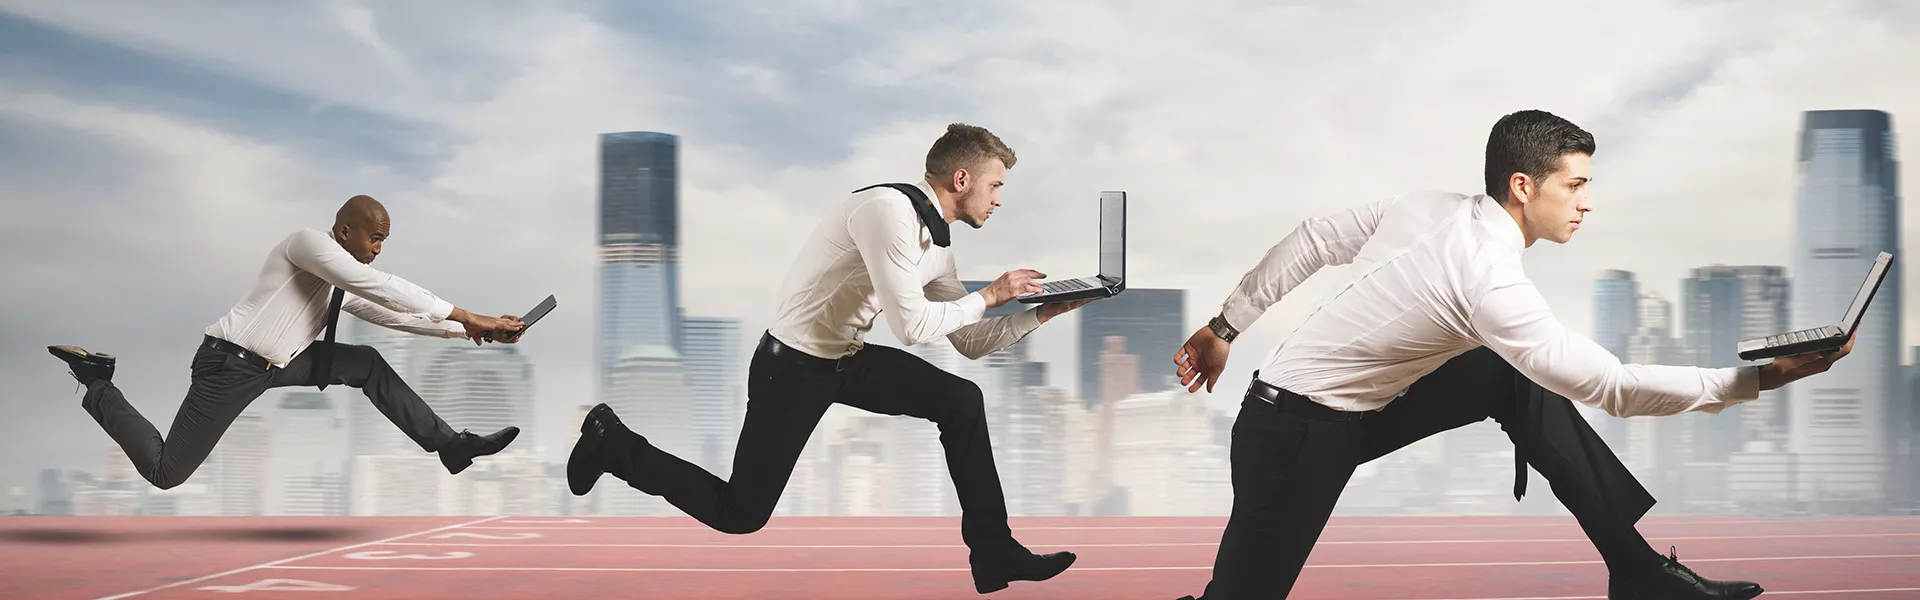 Drei Businessmänner sprinten mit ihren Laptops in der Hand um eine Wettbewerbsanalyse zu symbolisieren.